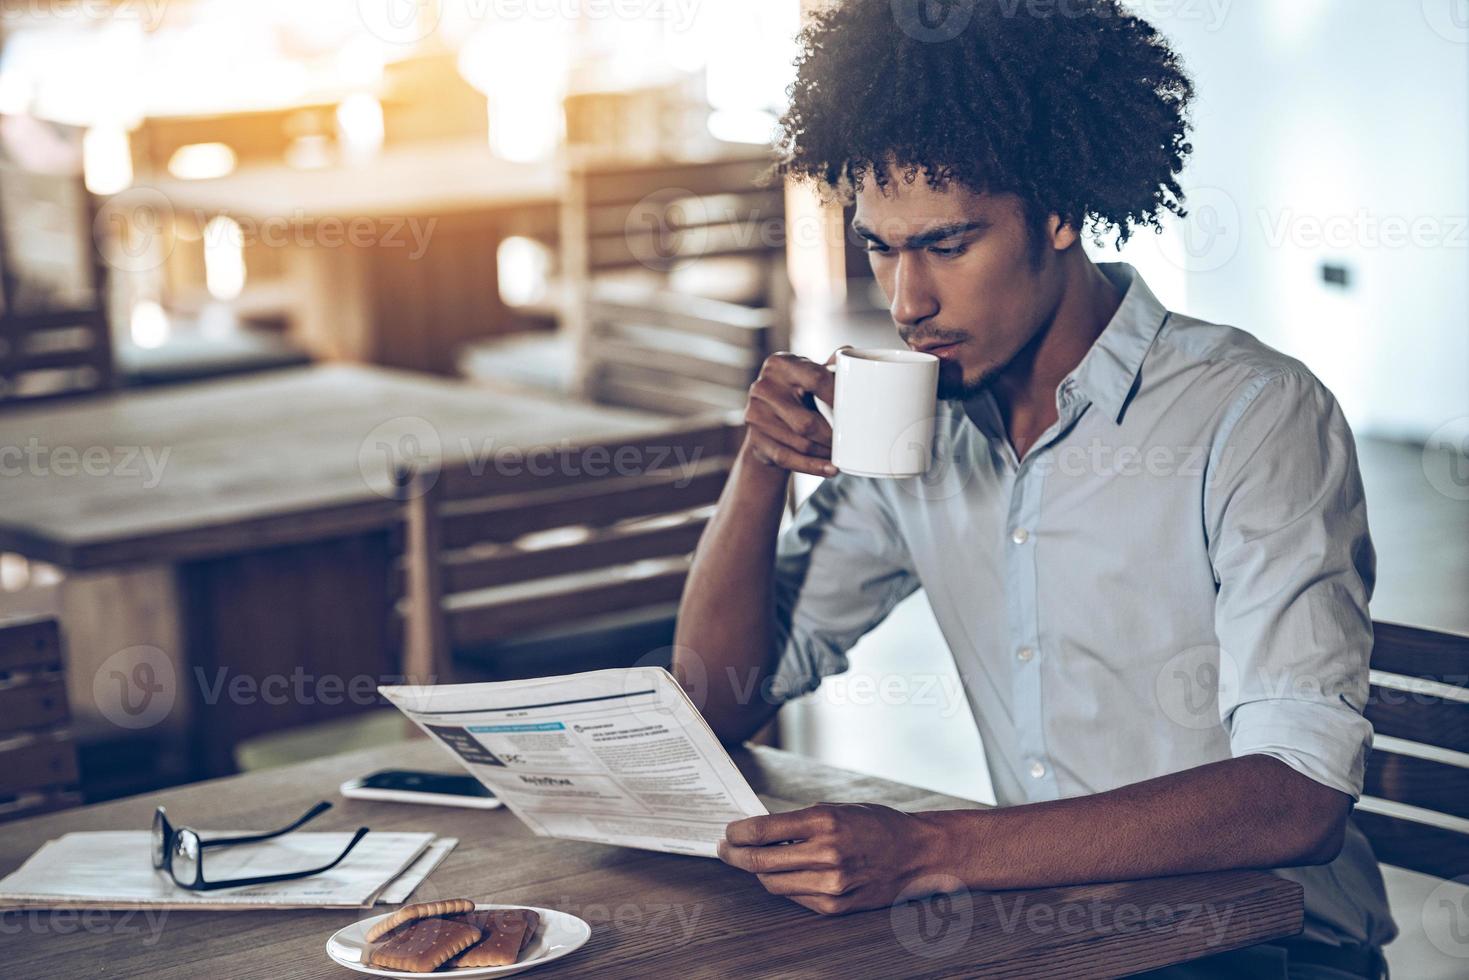 começando novo grande dia. jovem africano lendo jornal e tomando café enquanto está sentado no café foto